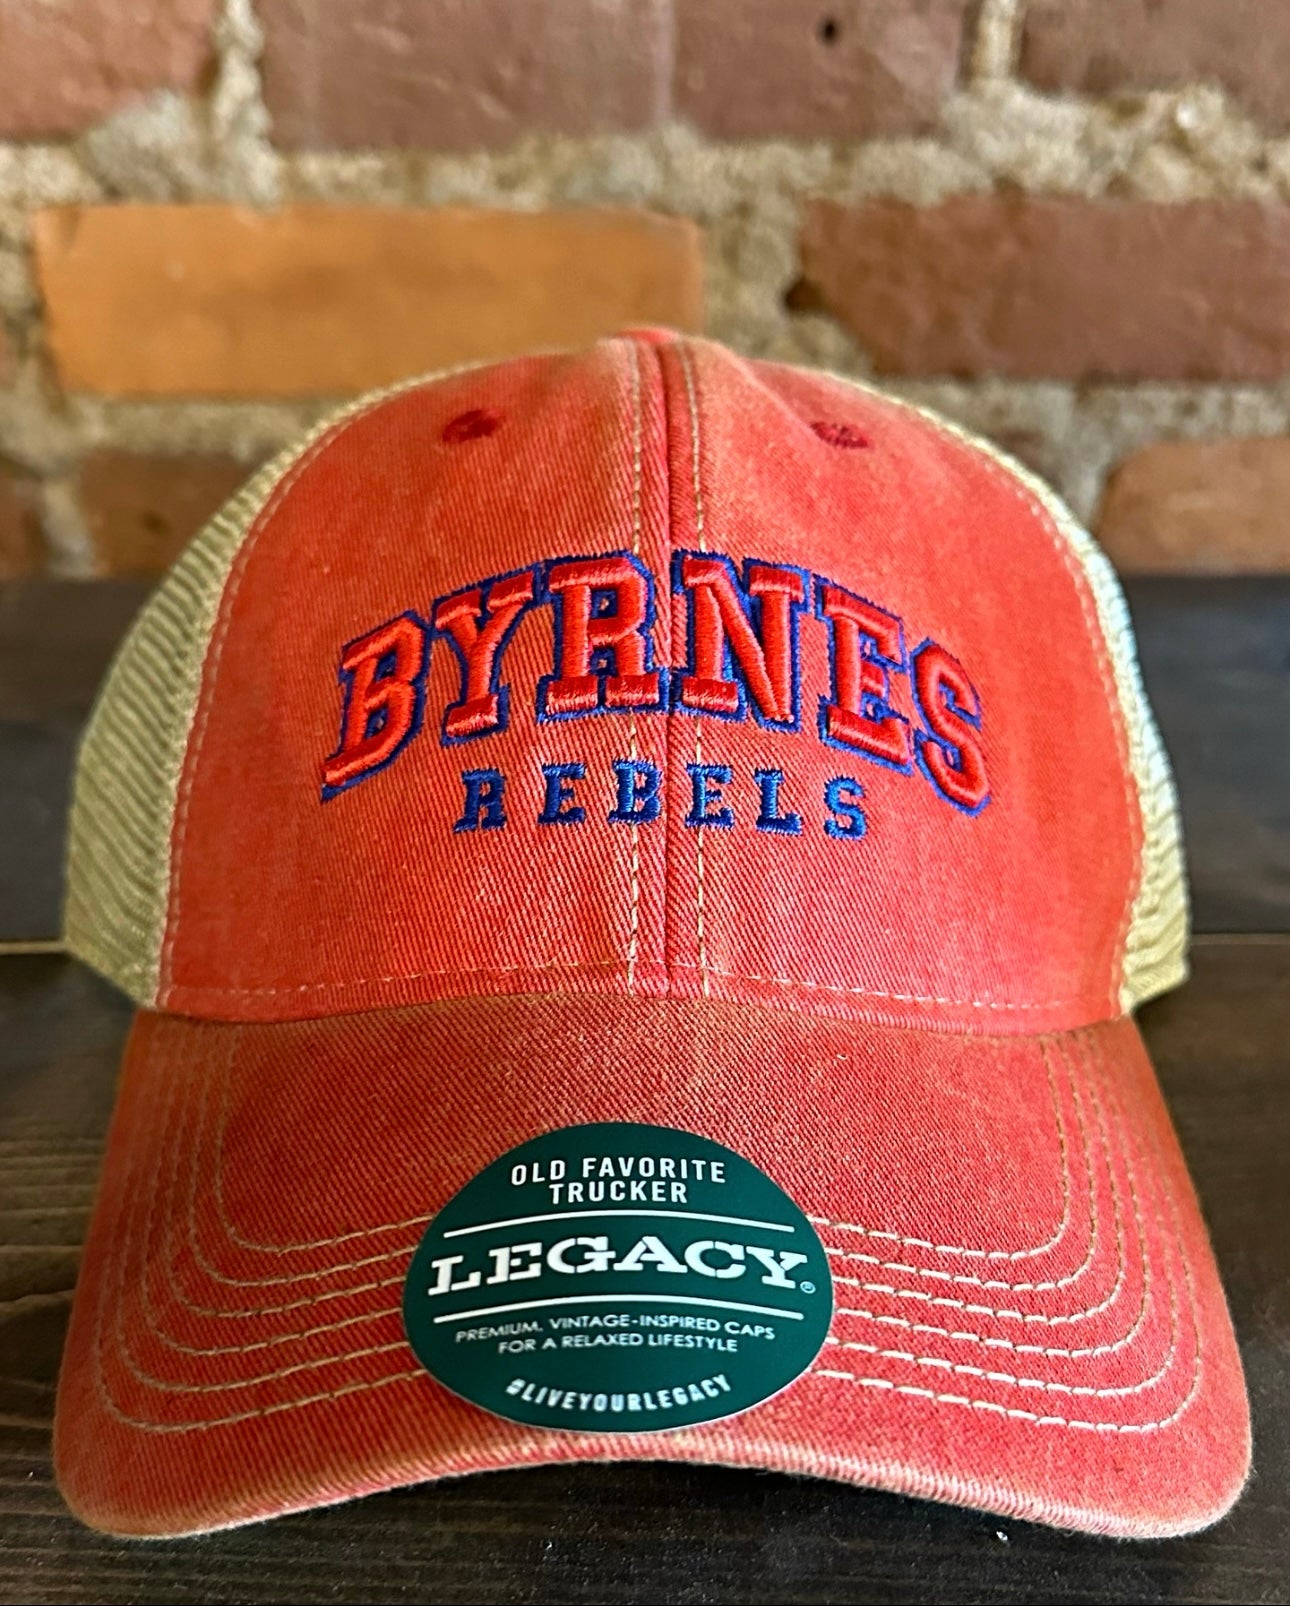 Byrnes High School OFA Trucker Hat - Legacy